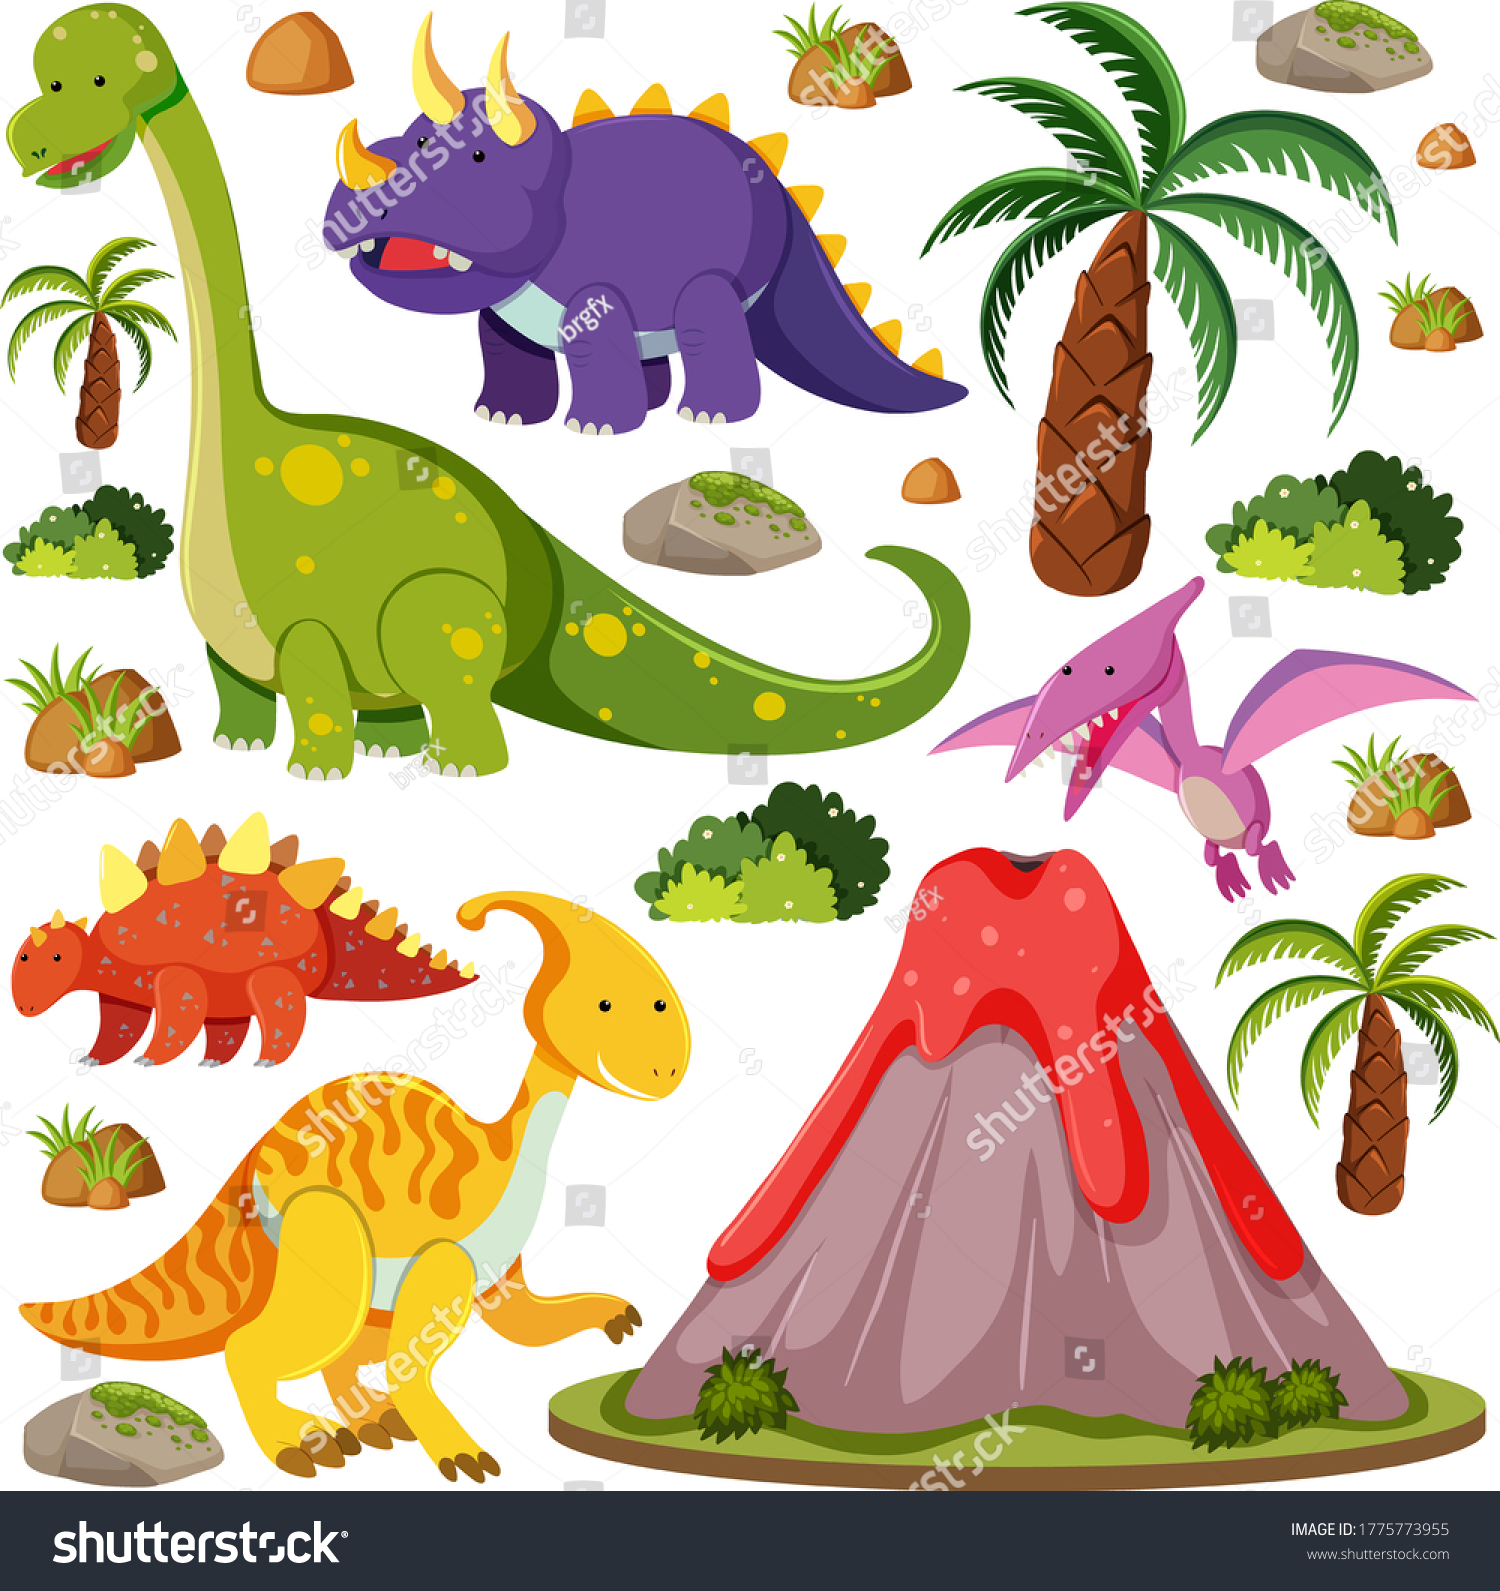 Картинки Динозавров Для Торта Распечатать